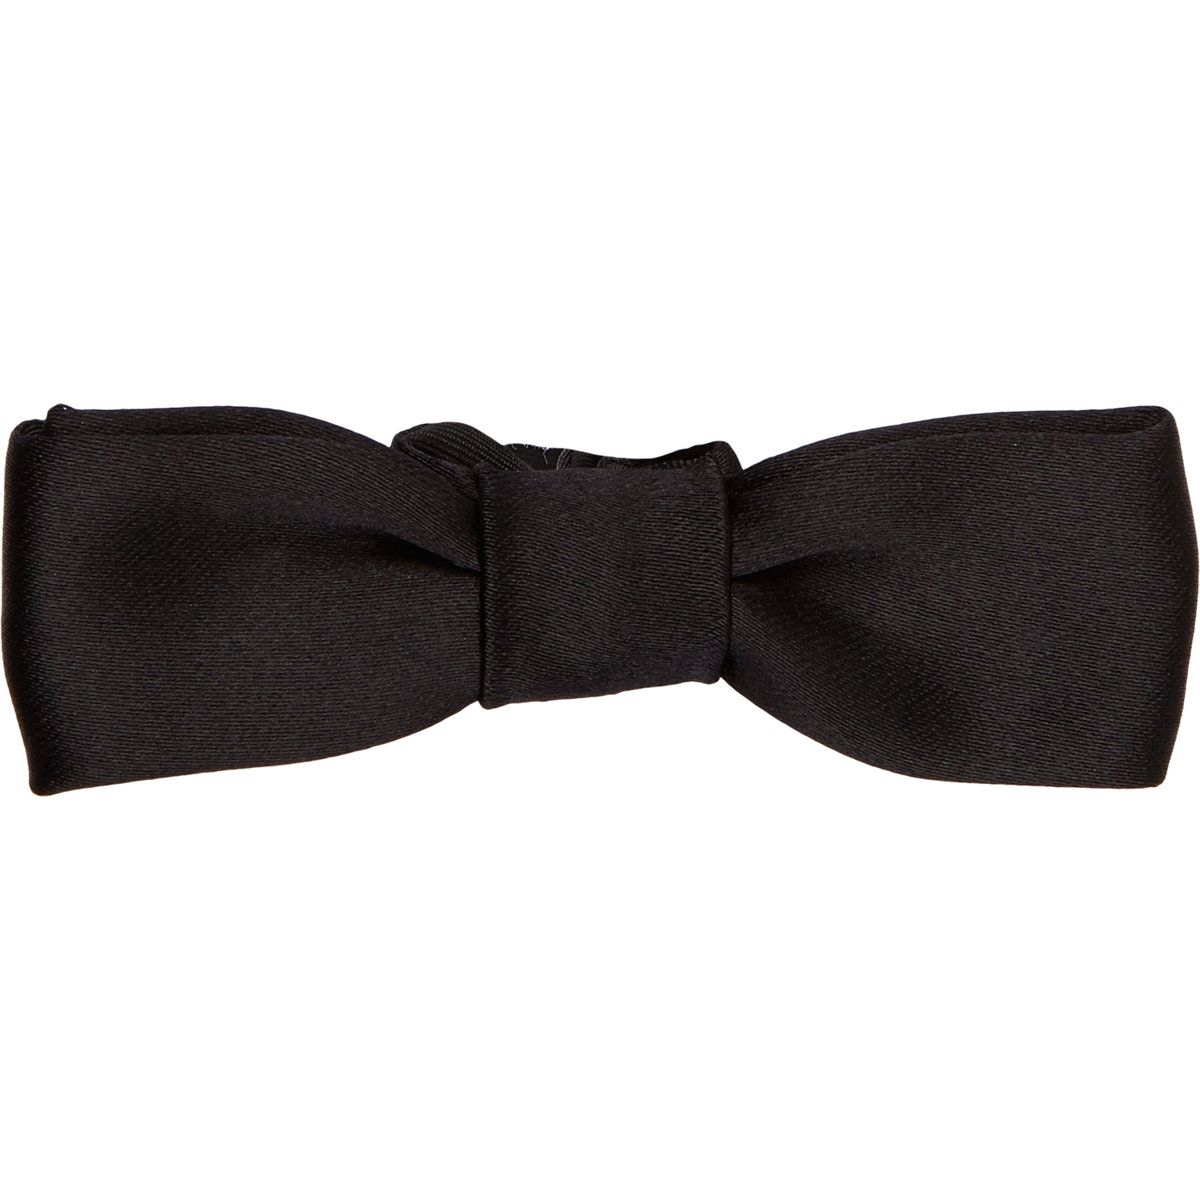 Lyst - Lanvin Satin Mini Bow Tie in Black for Men